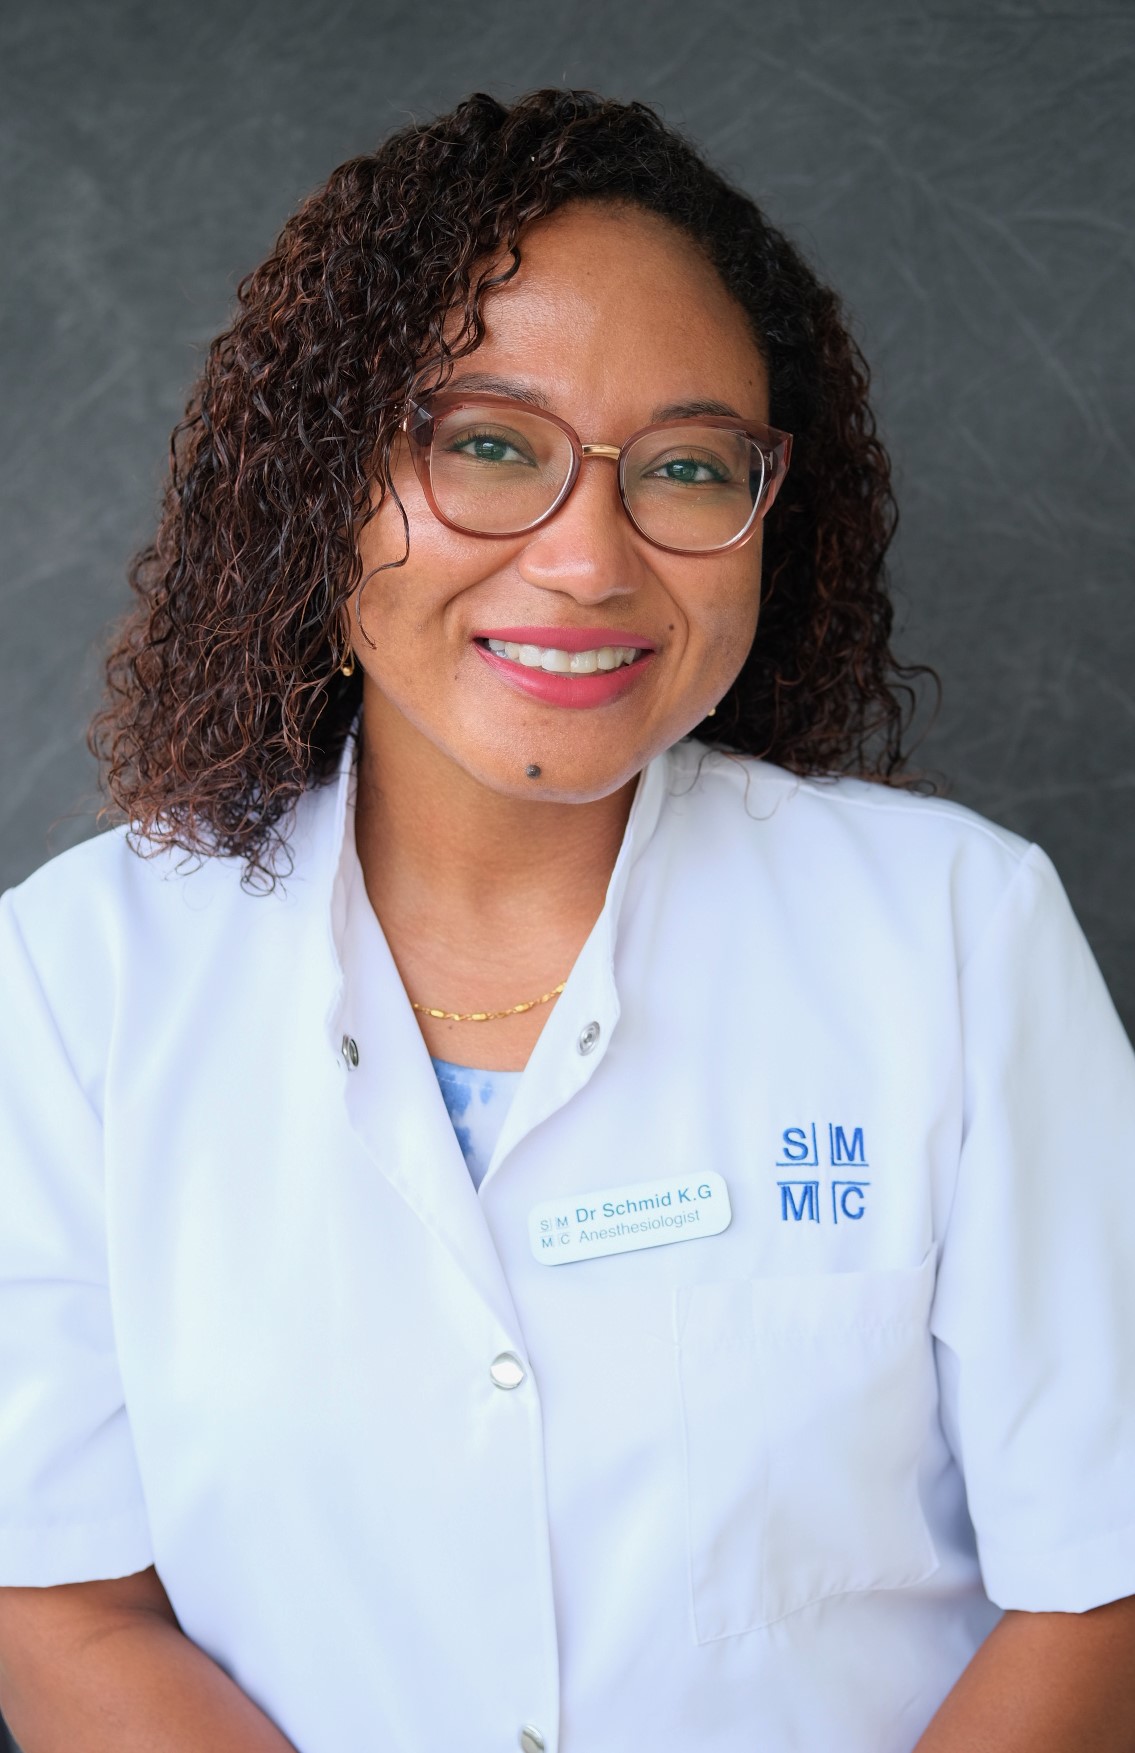 Dr. Karen Schmid - Anesthesiologist